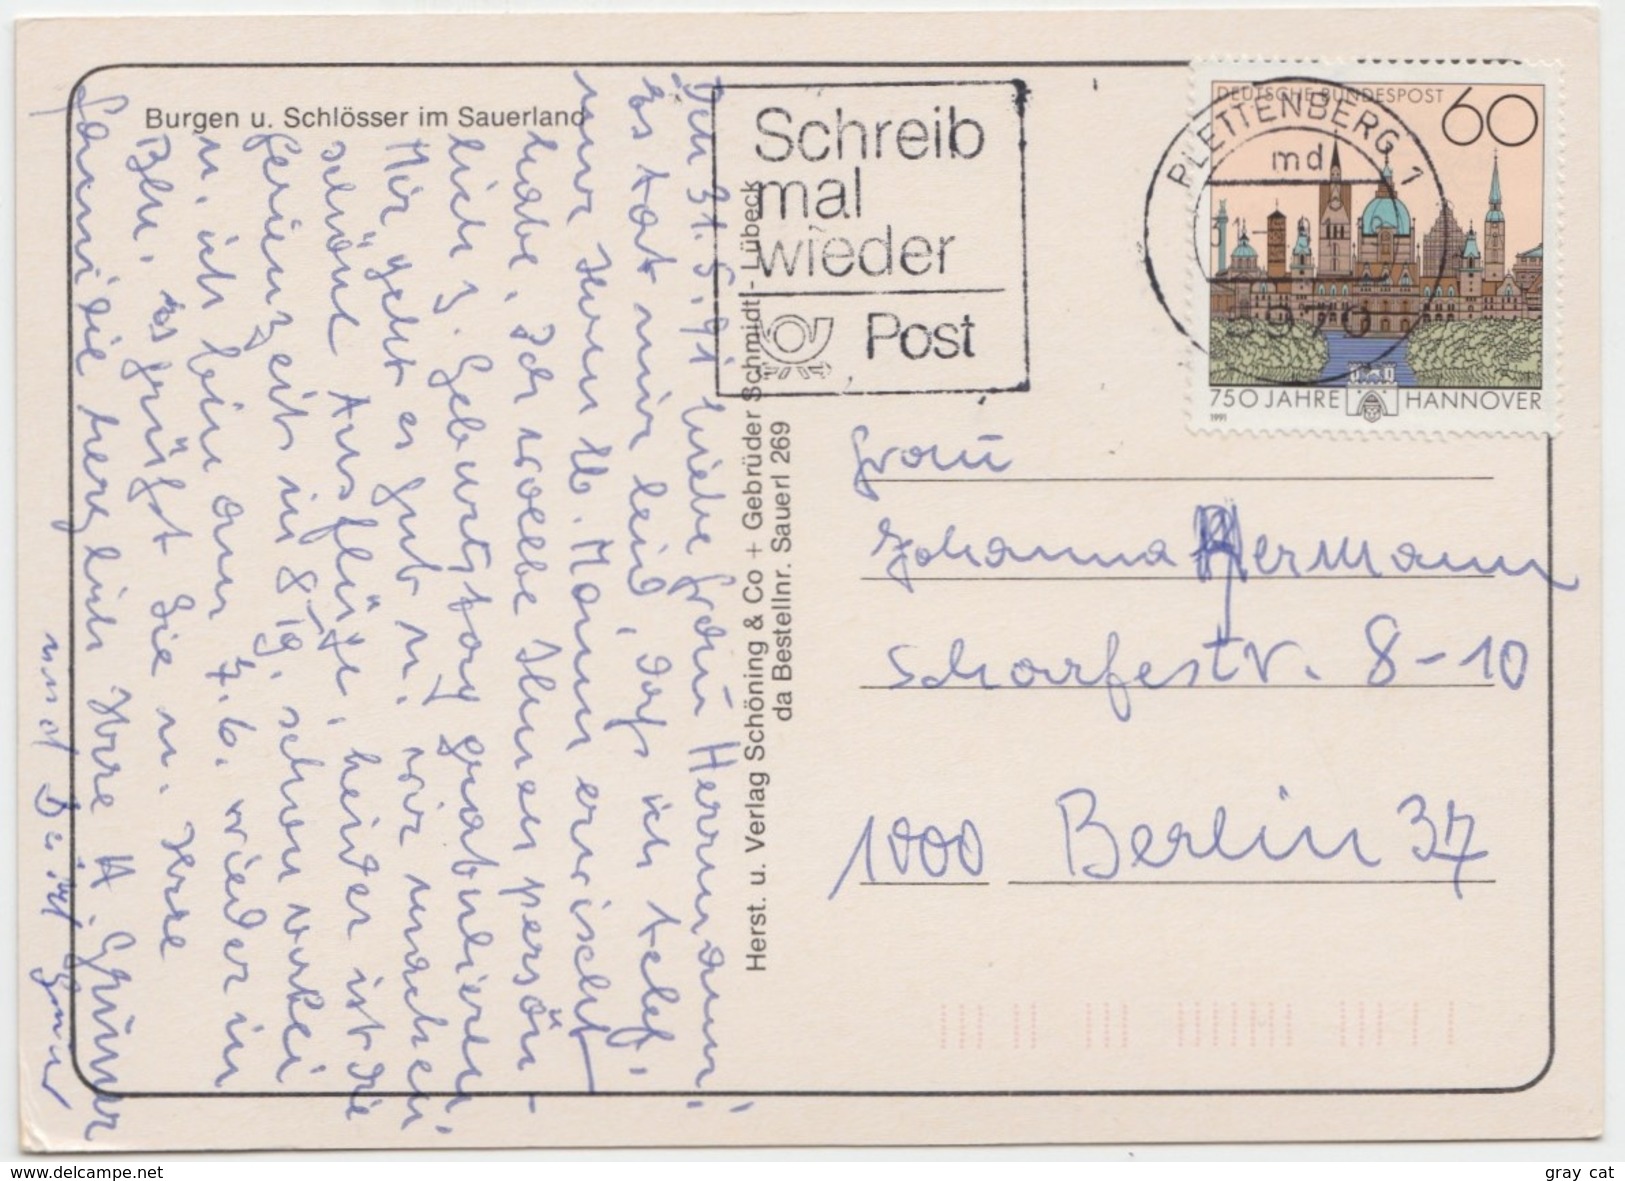 Burgen Und Schlosser Im Sauerland, Germany, Used Postcard [20555] - Sundern